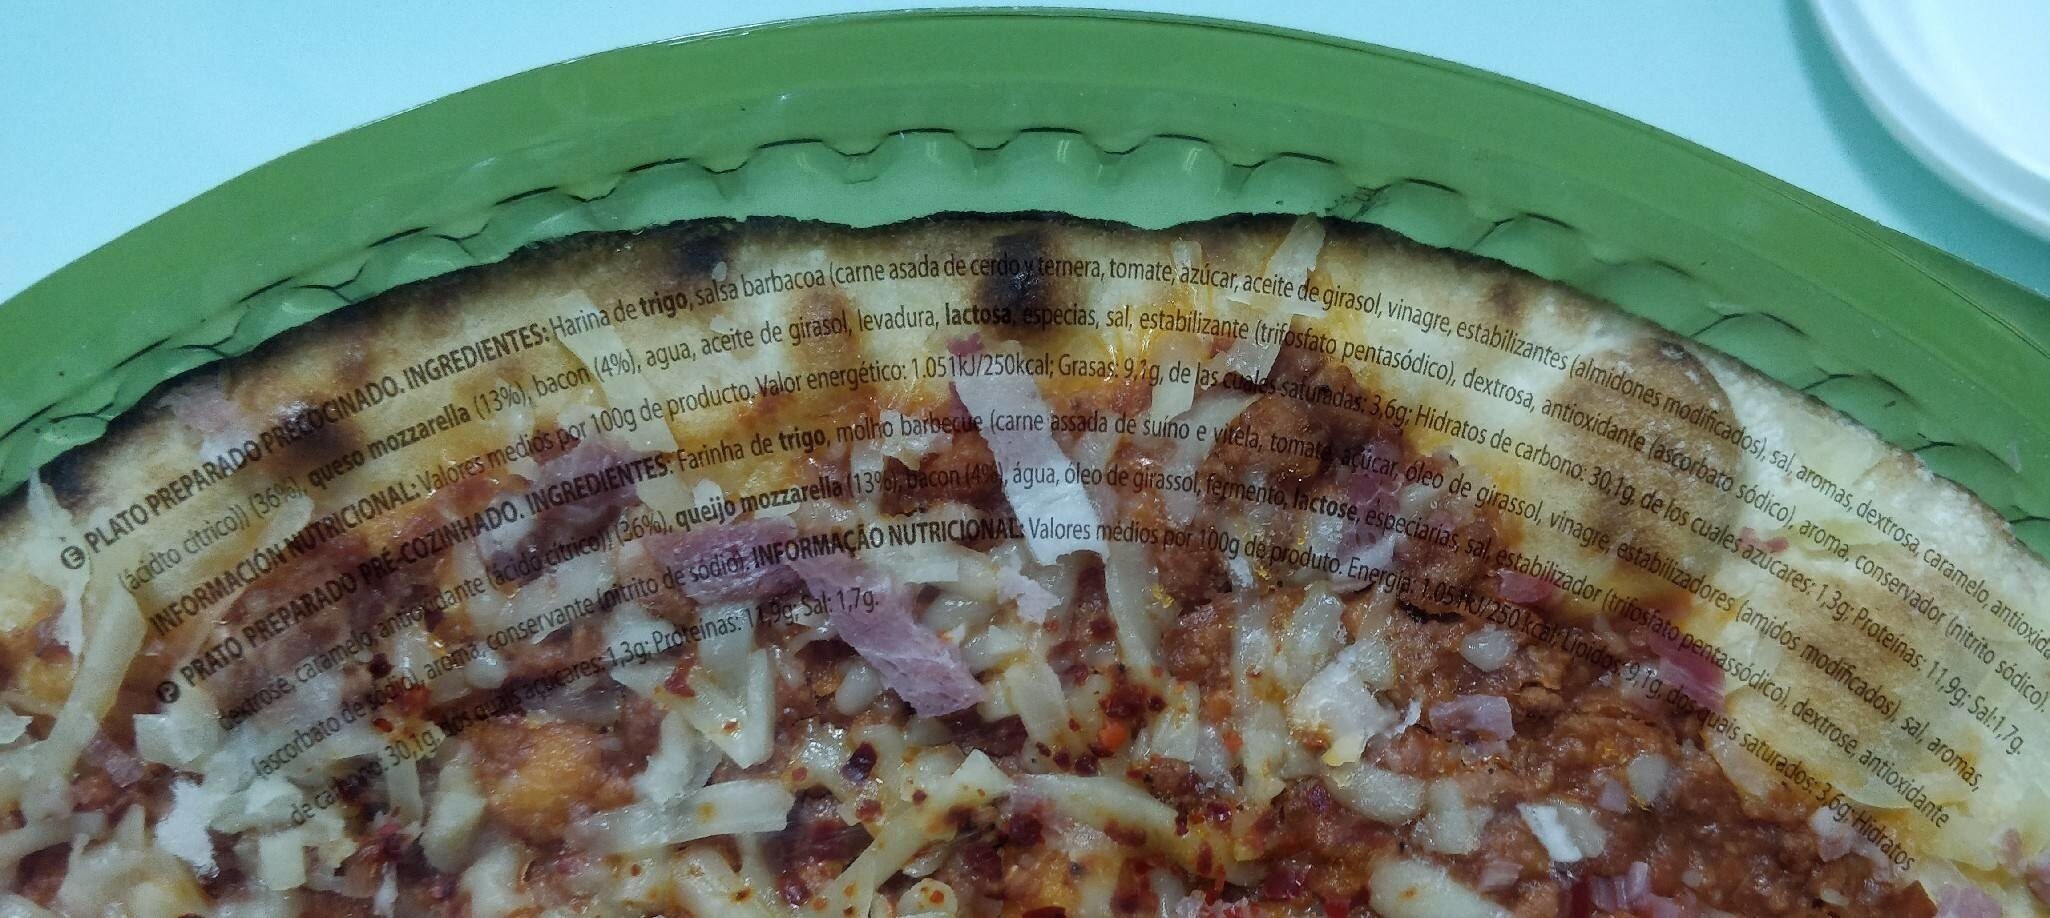 Pizza barbacoa - Información nutricional